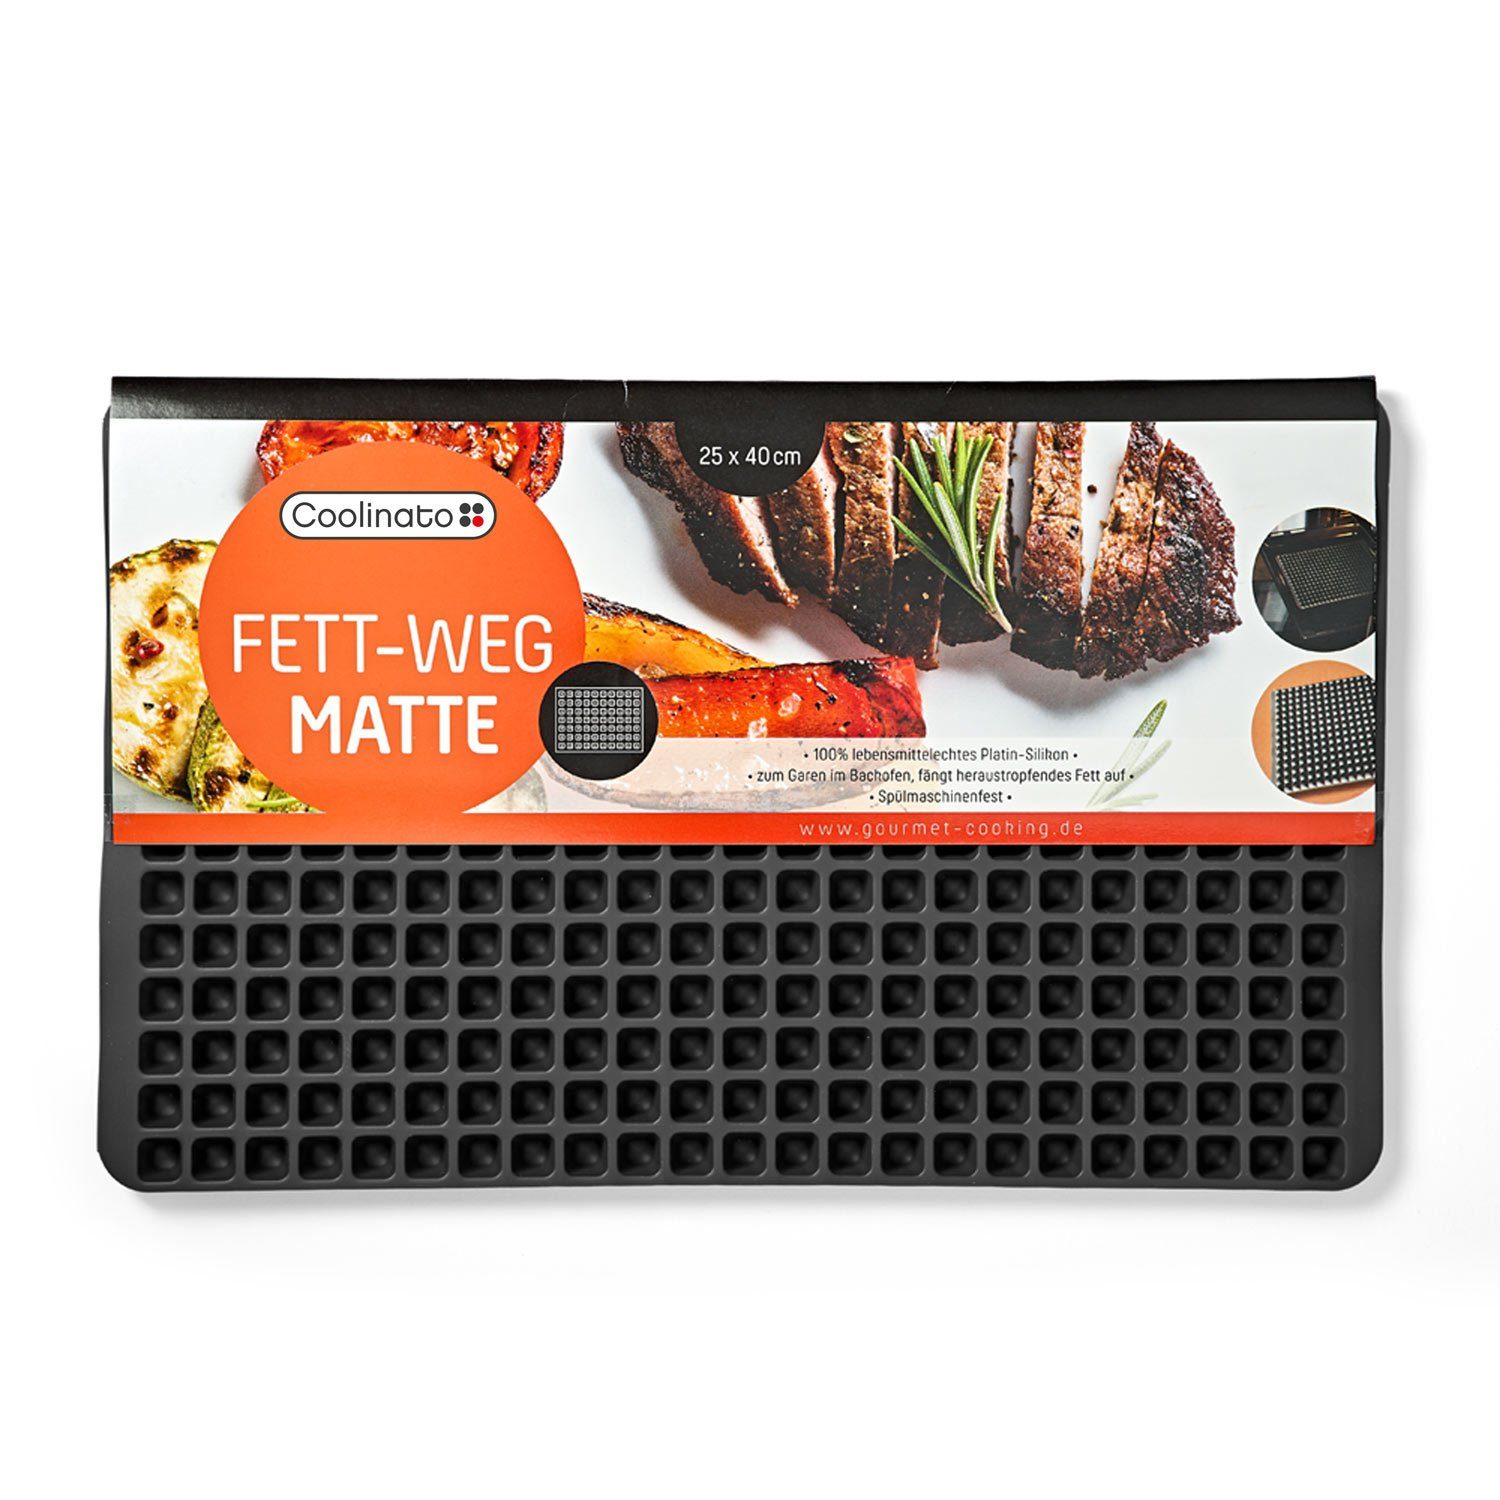 Platin Matte, antihaftbeschichtet Coolinato Backmatte Fett-Weg Silikon, 100%